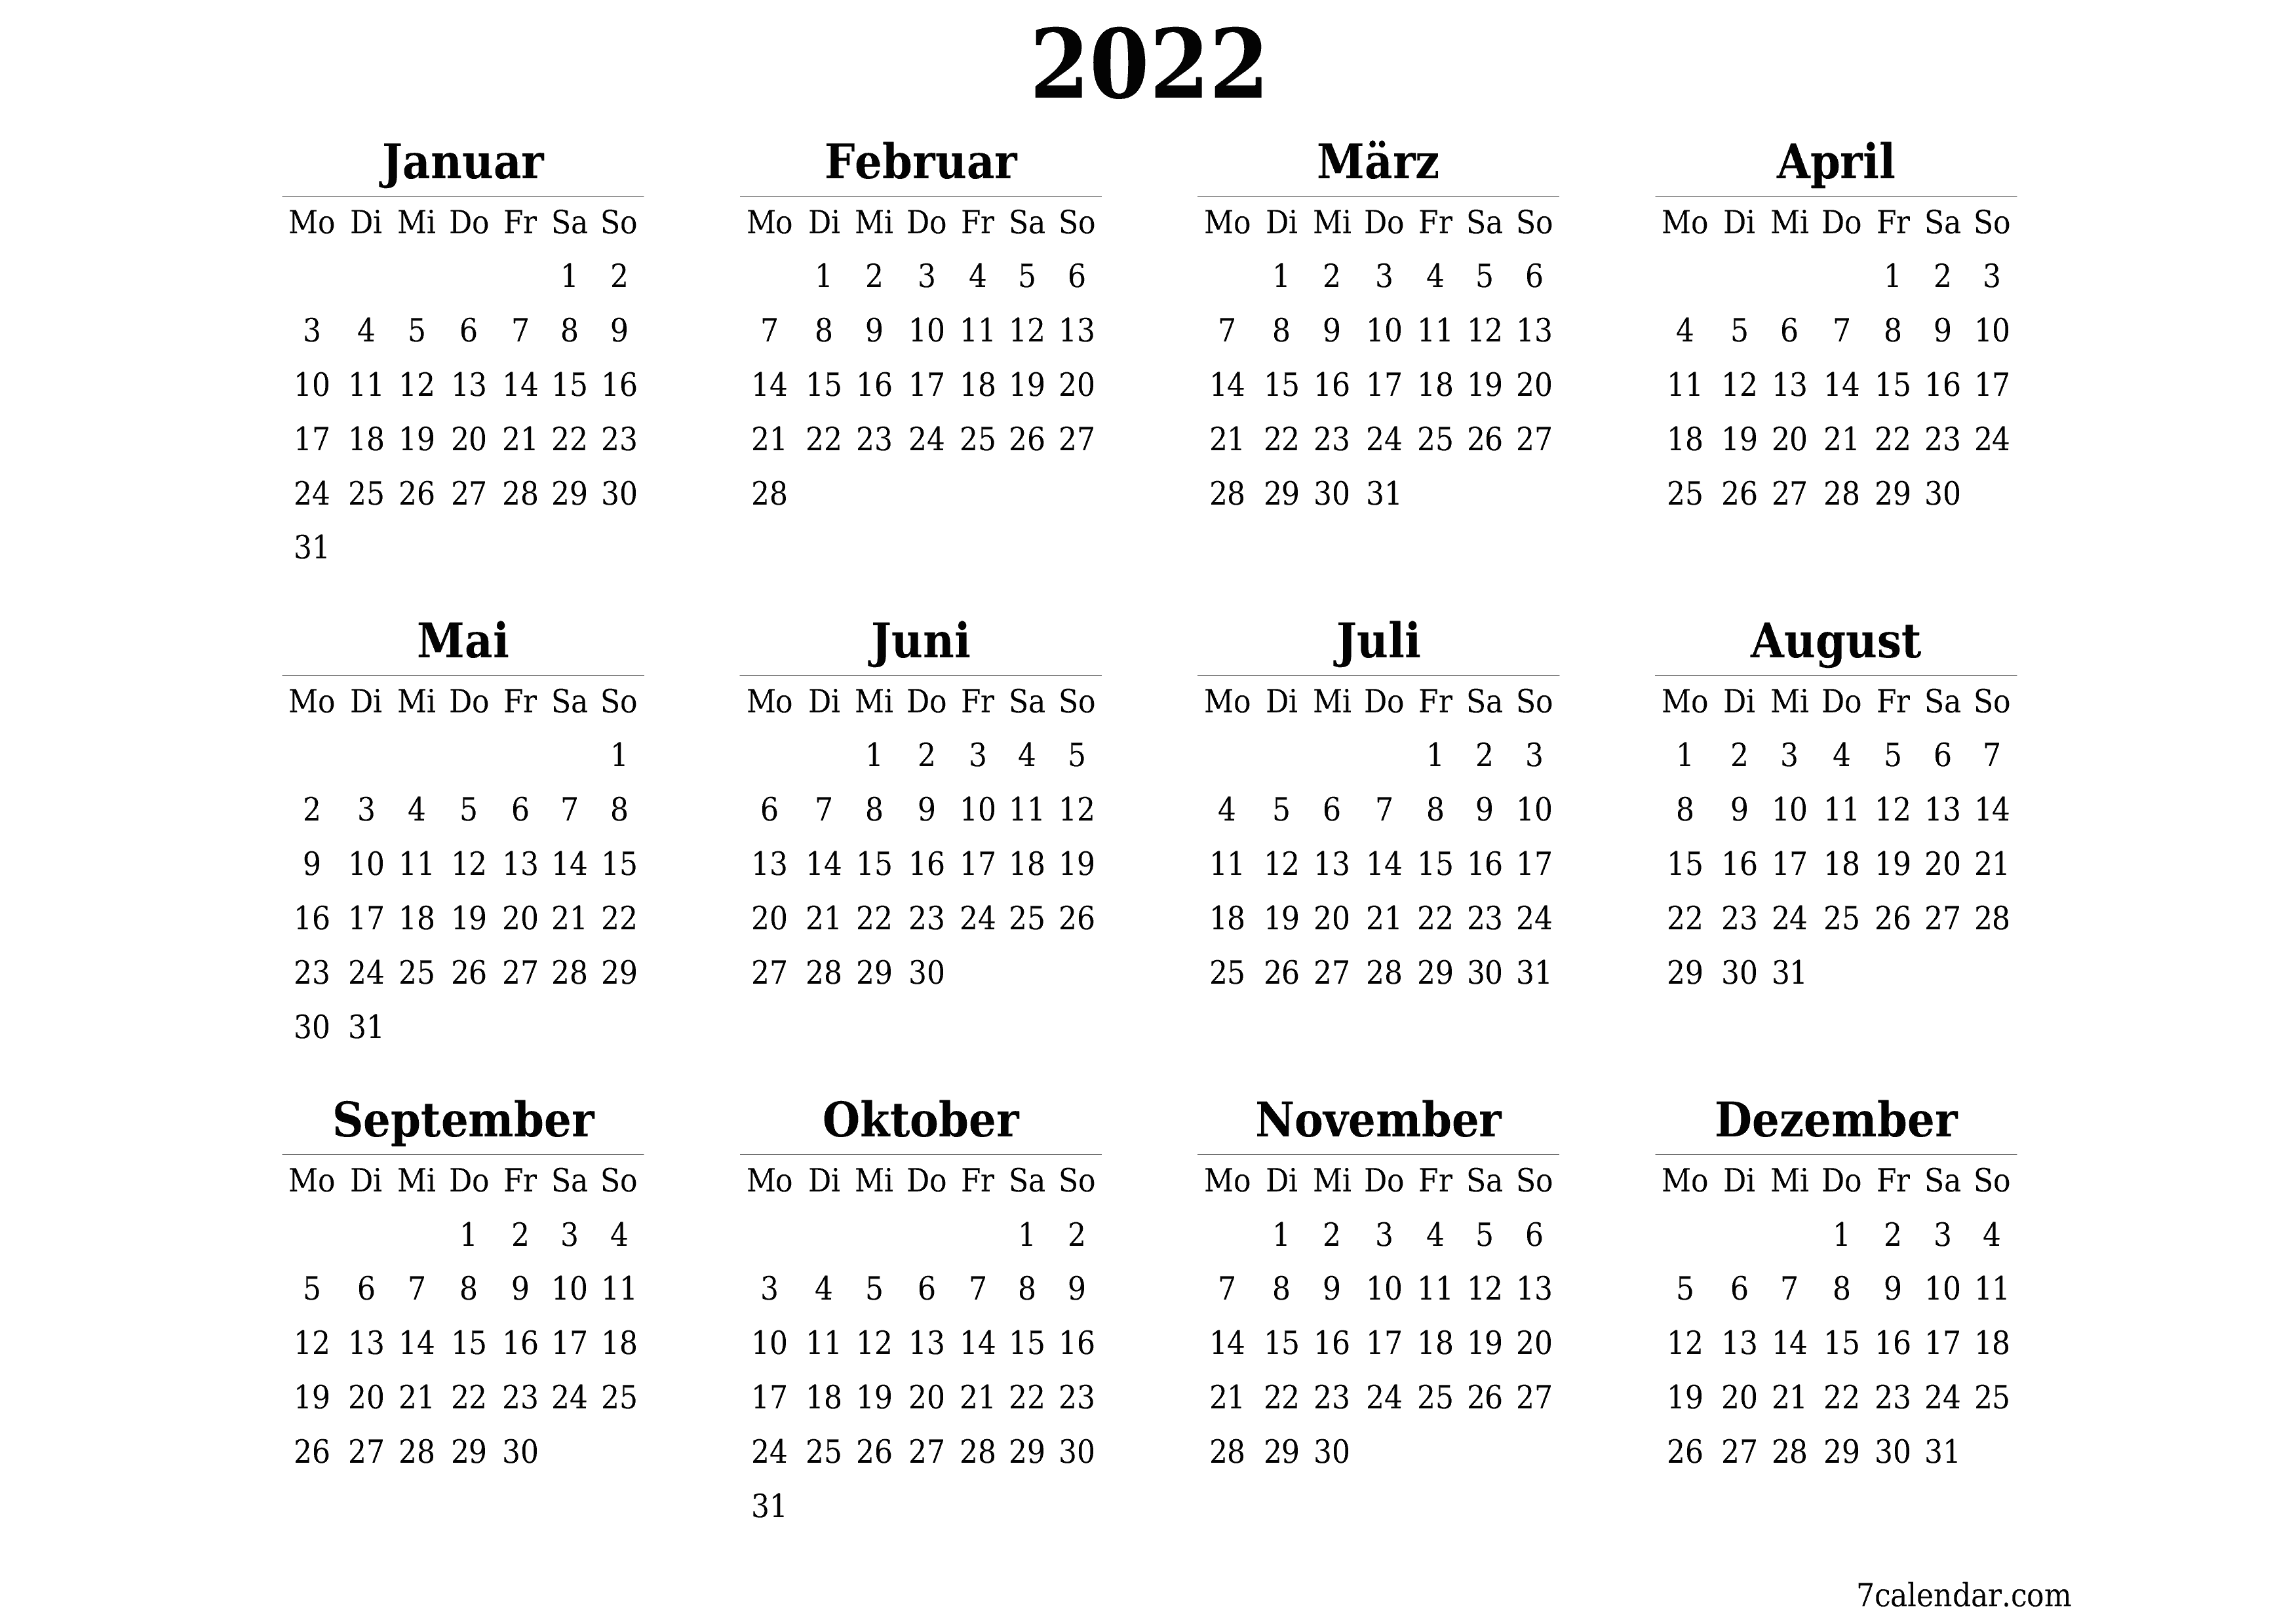 Leerer Jahreskalender für das Jahr 2022 speichern und als PDF PNG German - 7calendar.com drucken